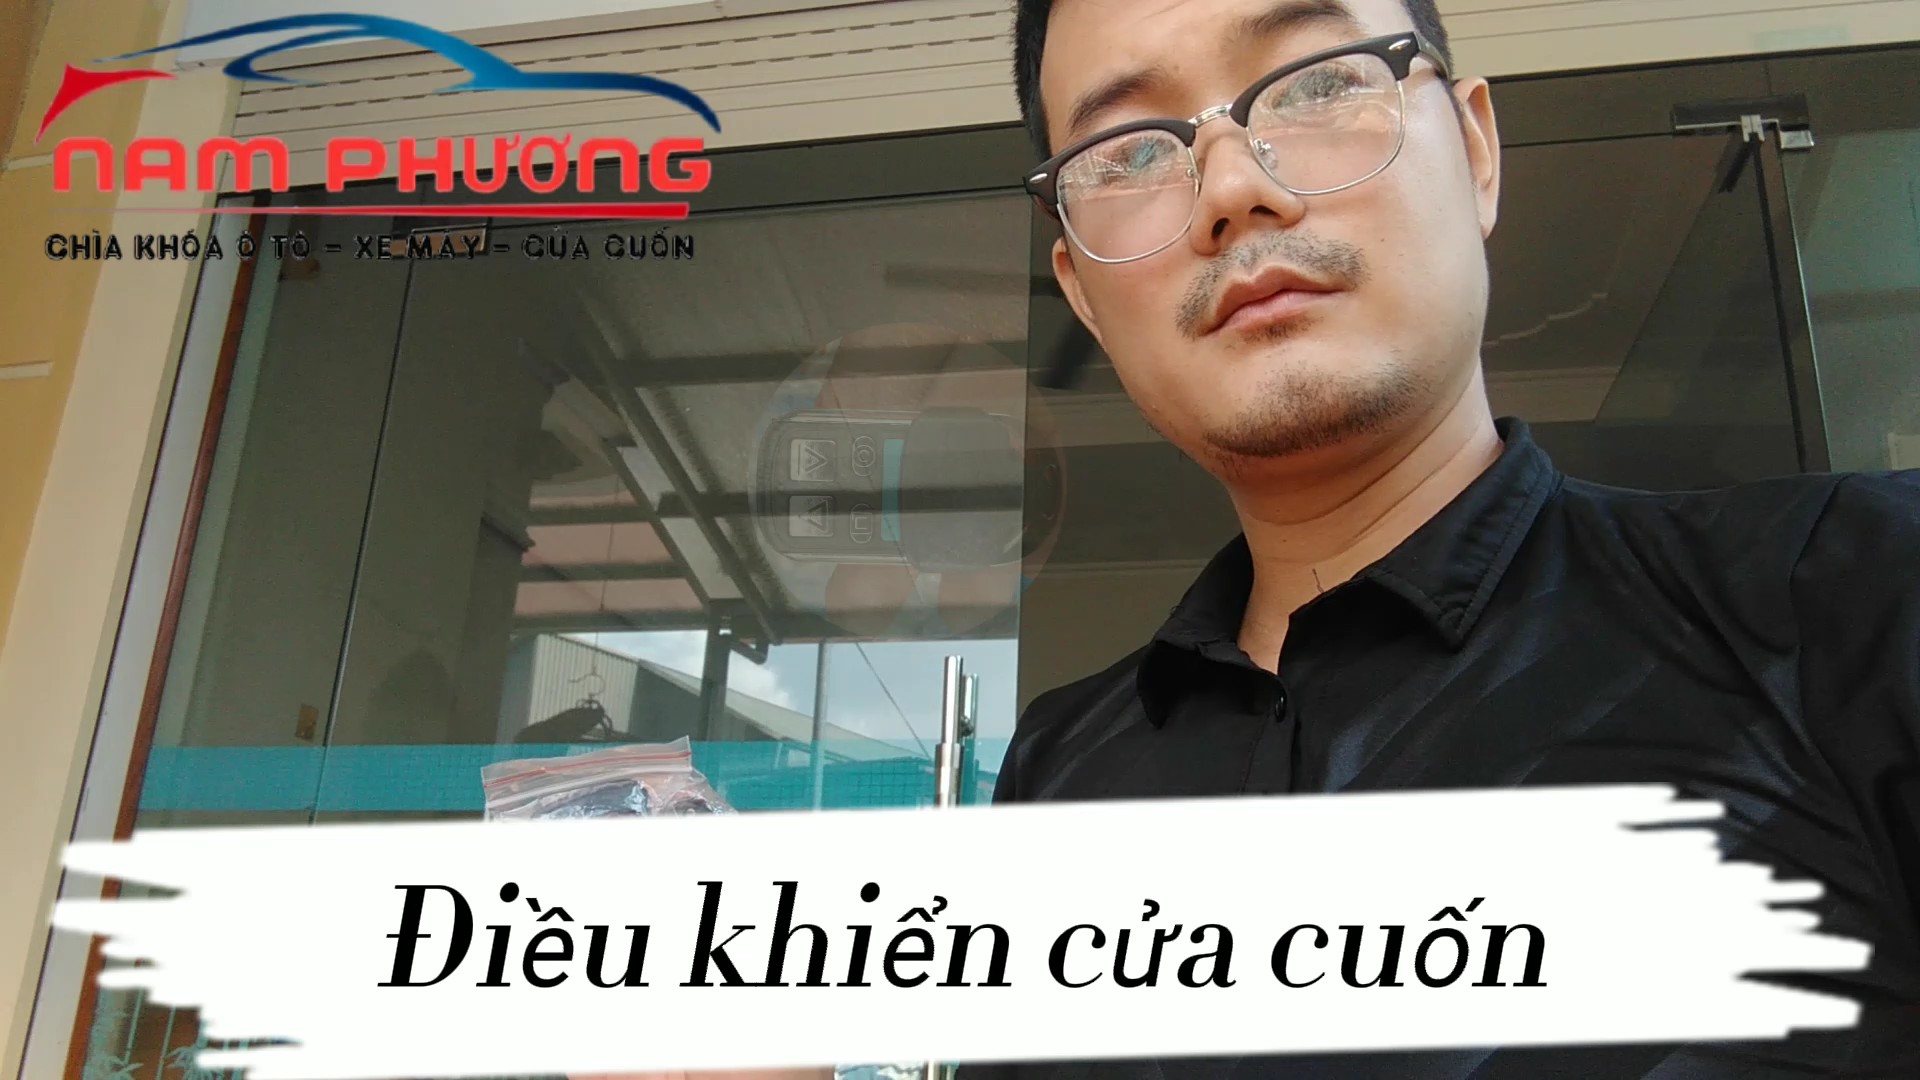 Làm điều khiển ô tô tại Quảng Ninh|Làm điều khiển cửa cuốn tại Quảng Ninh